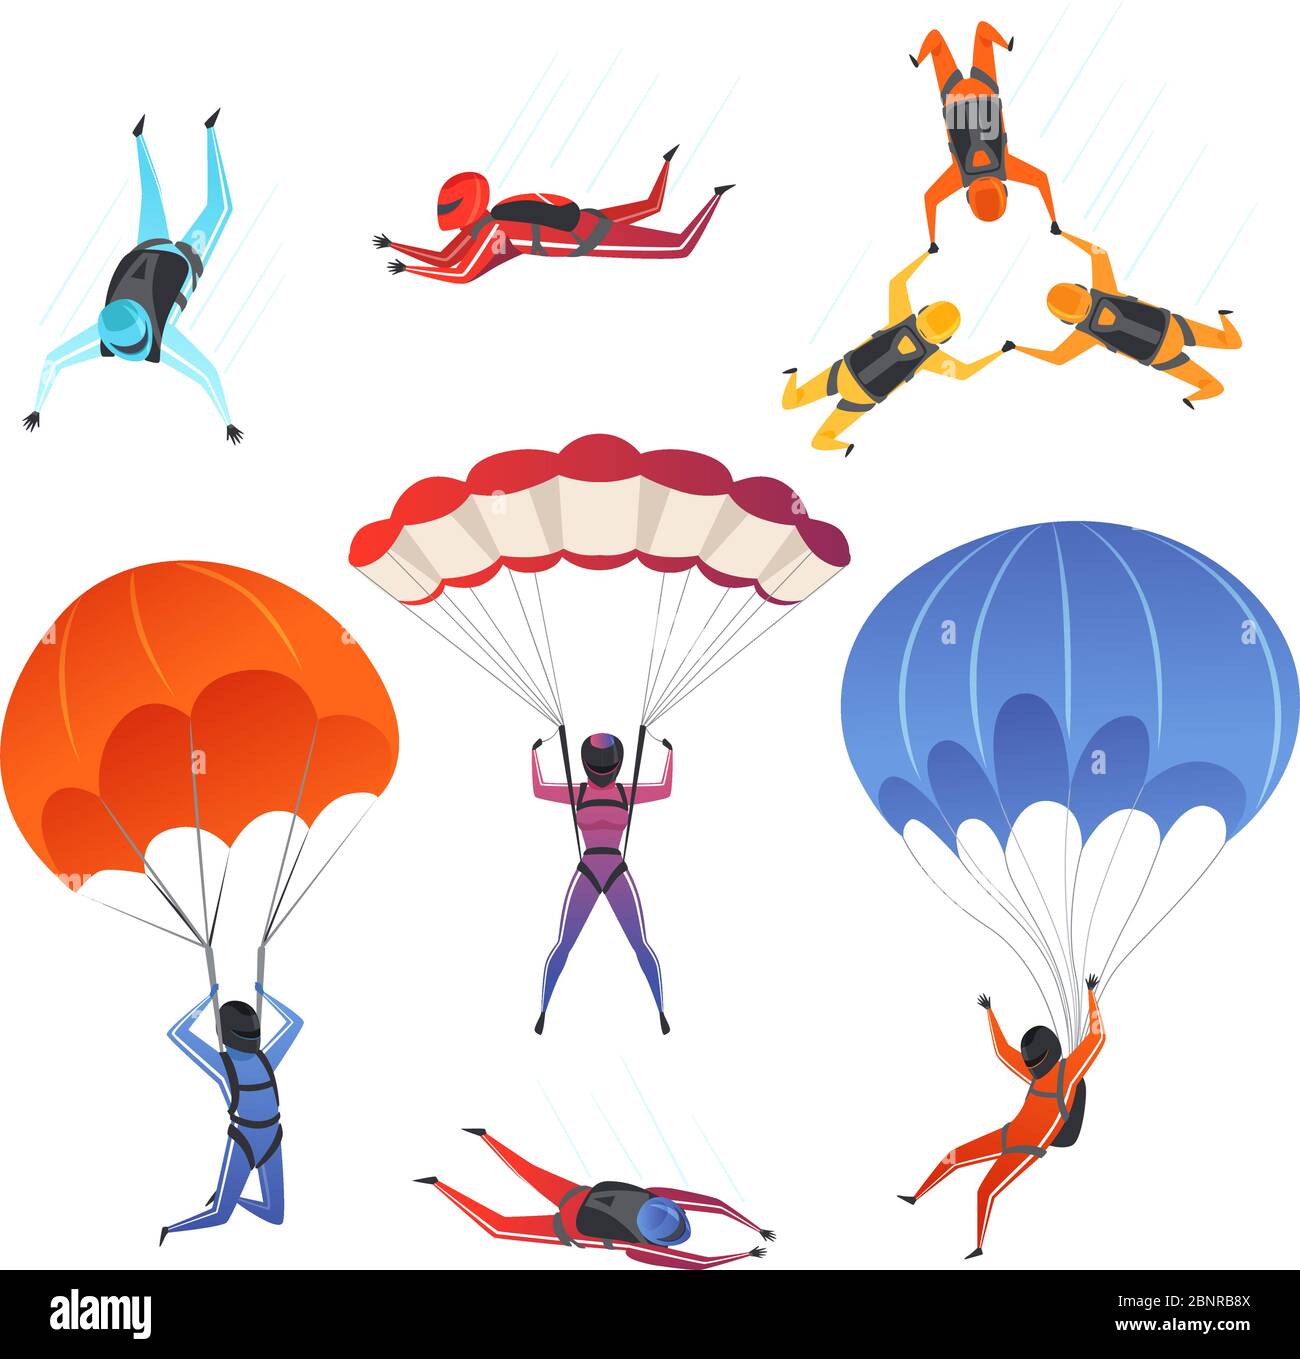 Fallschirmspringer. Extremsport Fallschirmspringen Paragliding männliche und weibliche Sportler in Himmel Vektor-Zeichen Stock Vektor